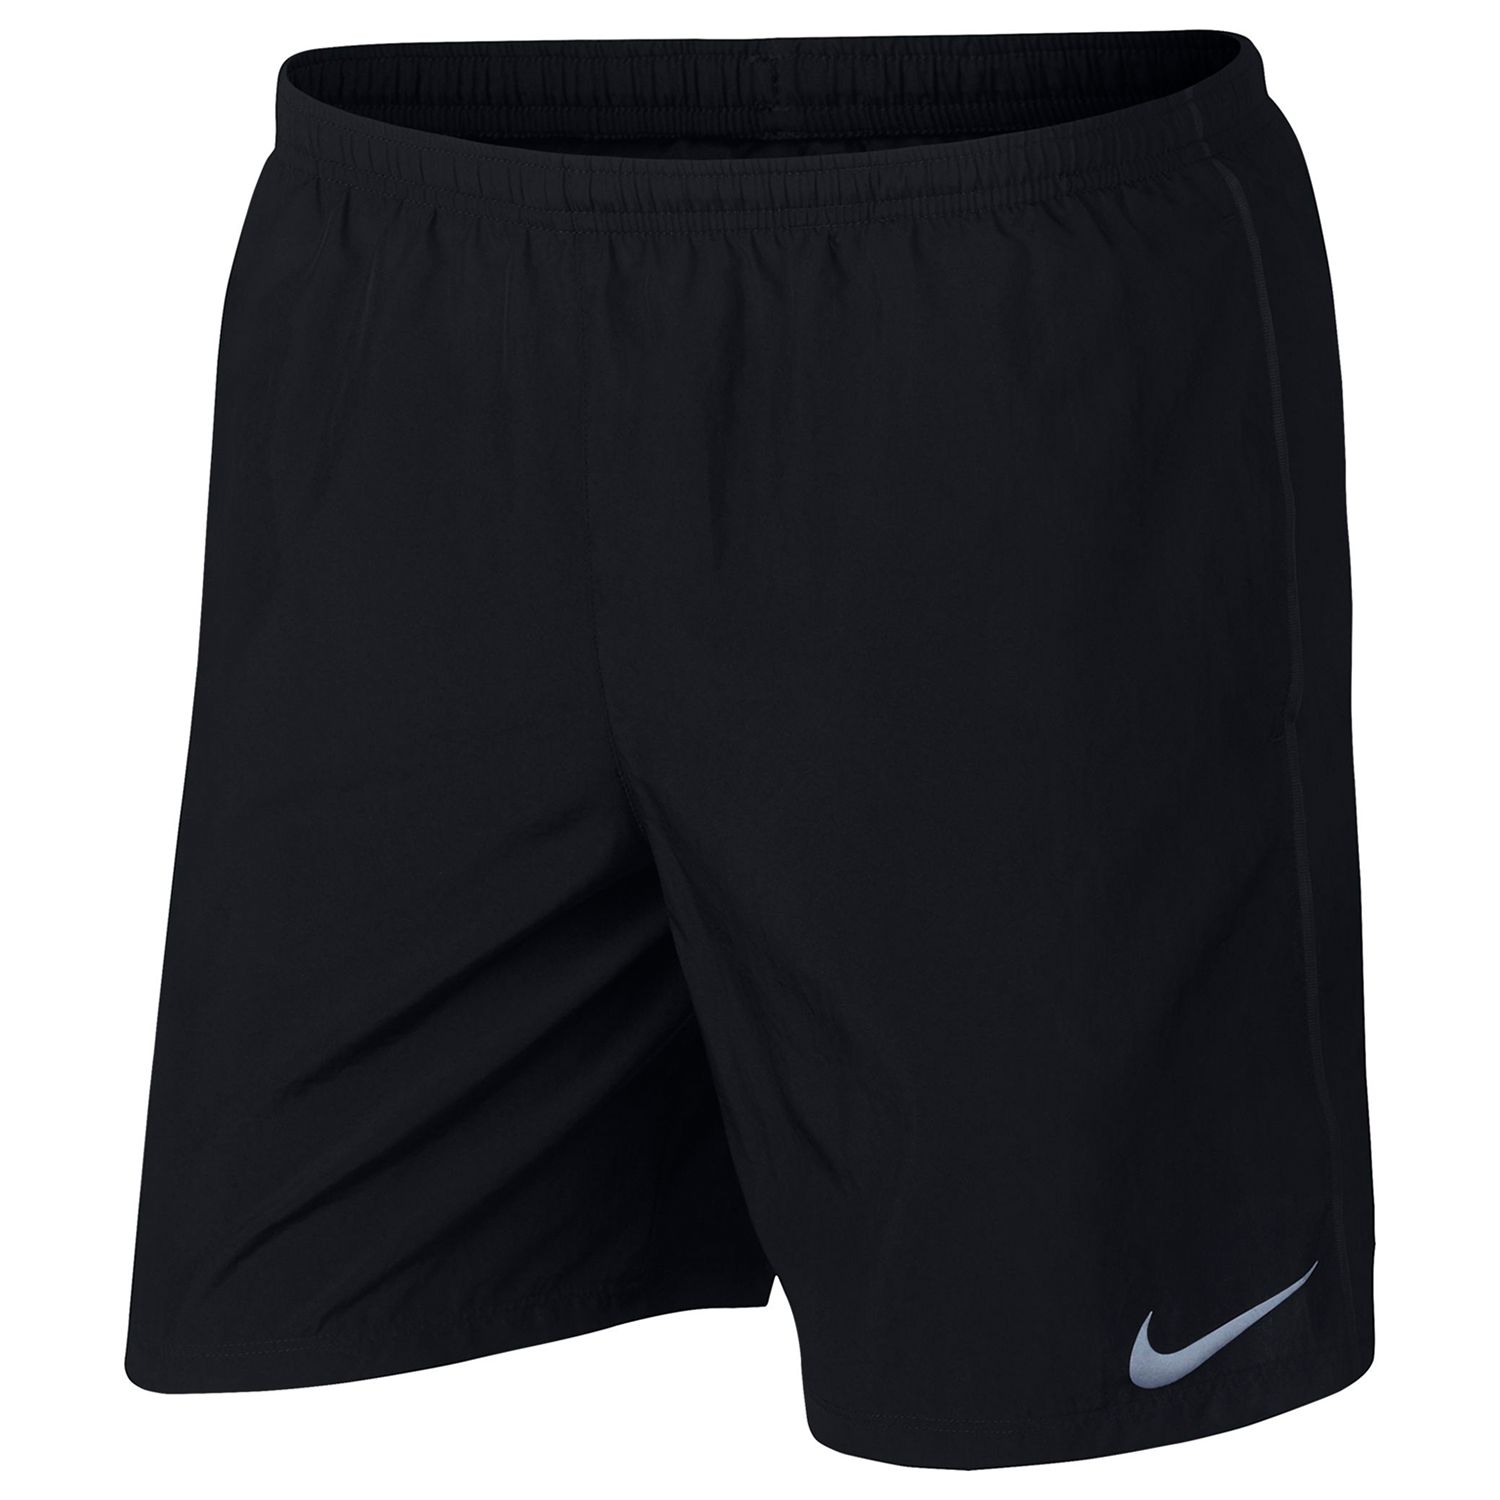 Men's Nike Dri-FIT Running Shorts